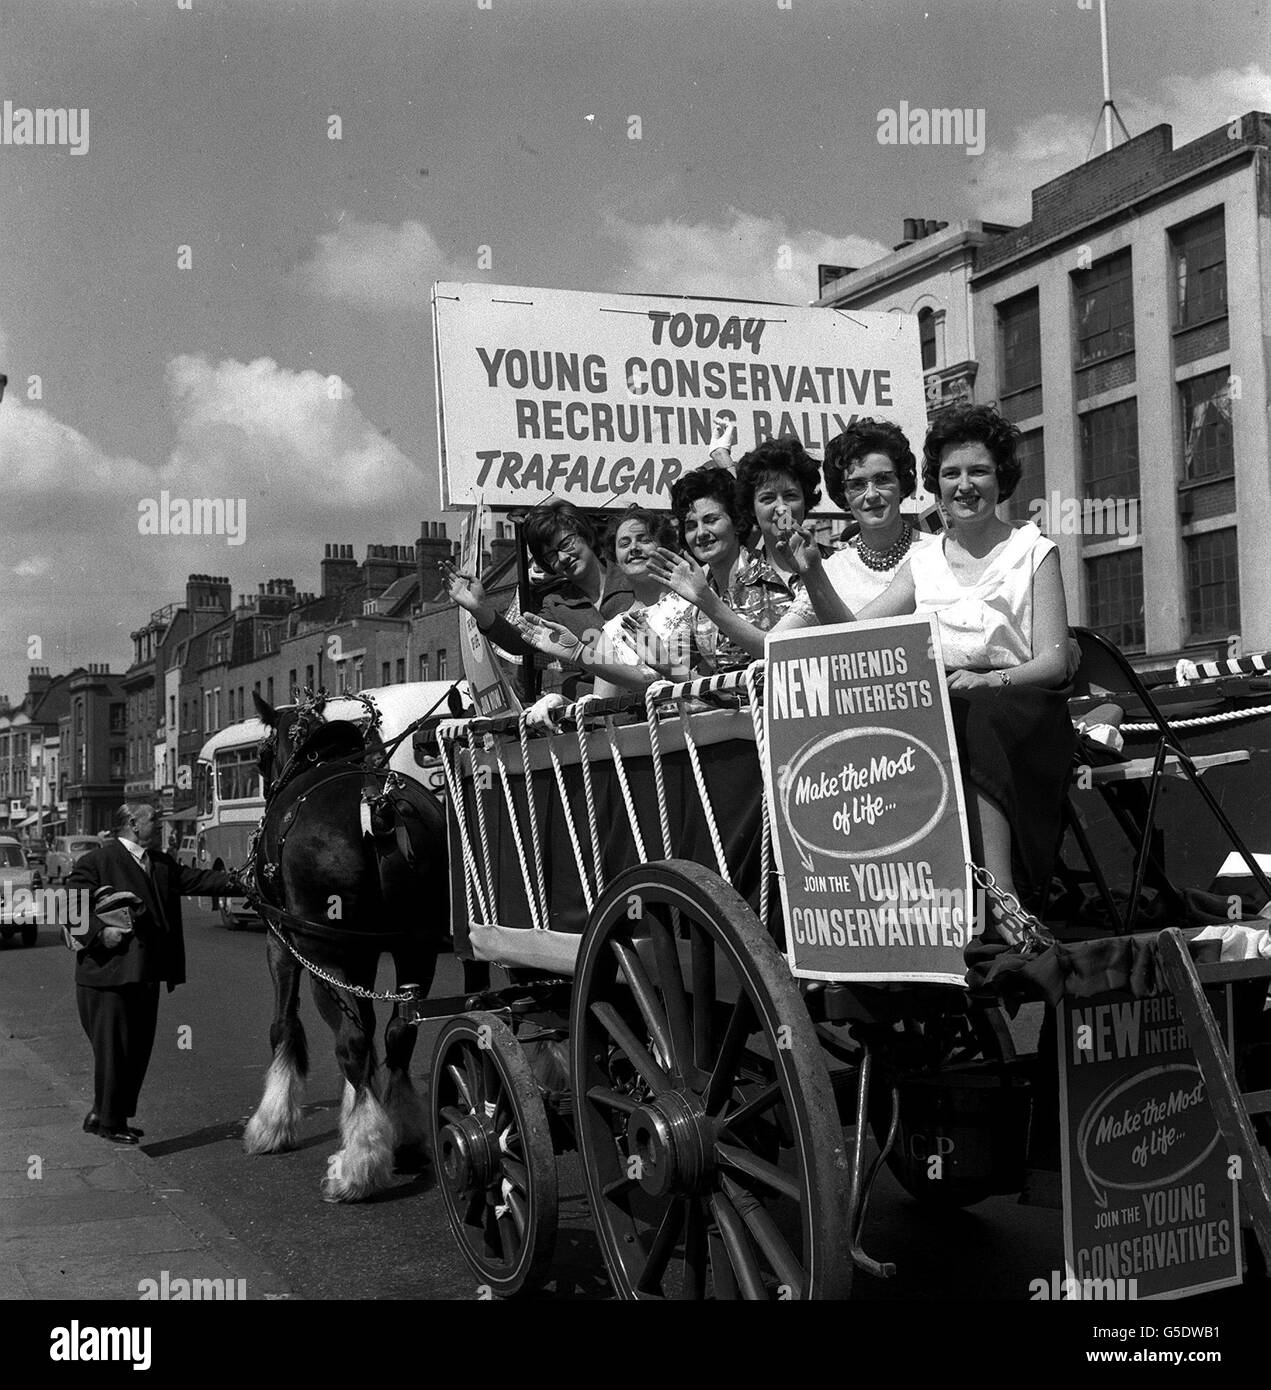 Sechs Mädchen der Young Conservatives sind auf einer von Pferden gezogenen Dray in der Whitechapel Road abgebildet. Sie machten sich auf eine Fahrt, die sie durch die City und West End zum Trafalgar Square führen sollte, um die Aufmerksamkeit auf die Young Conservatives Rally zu lenken. Stockfoto